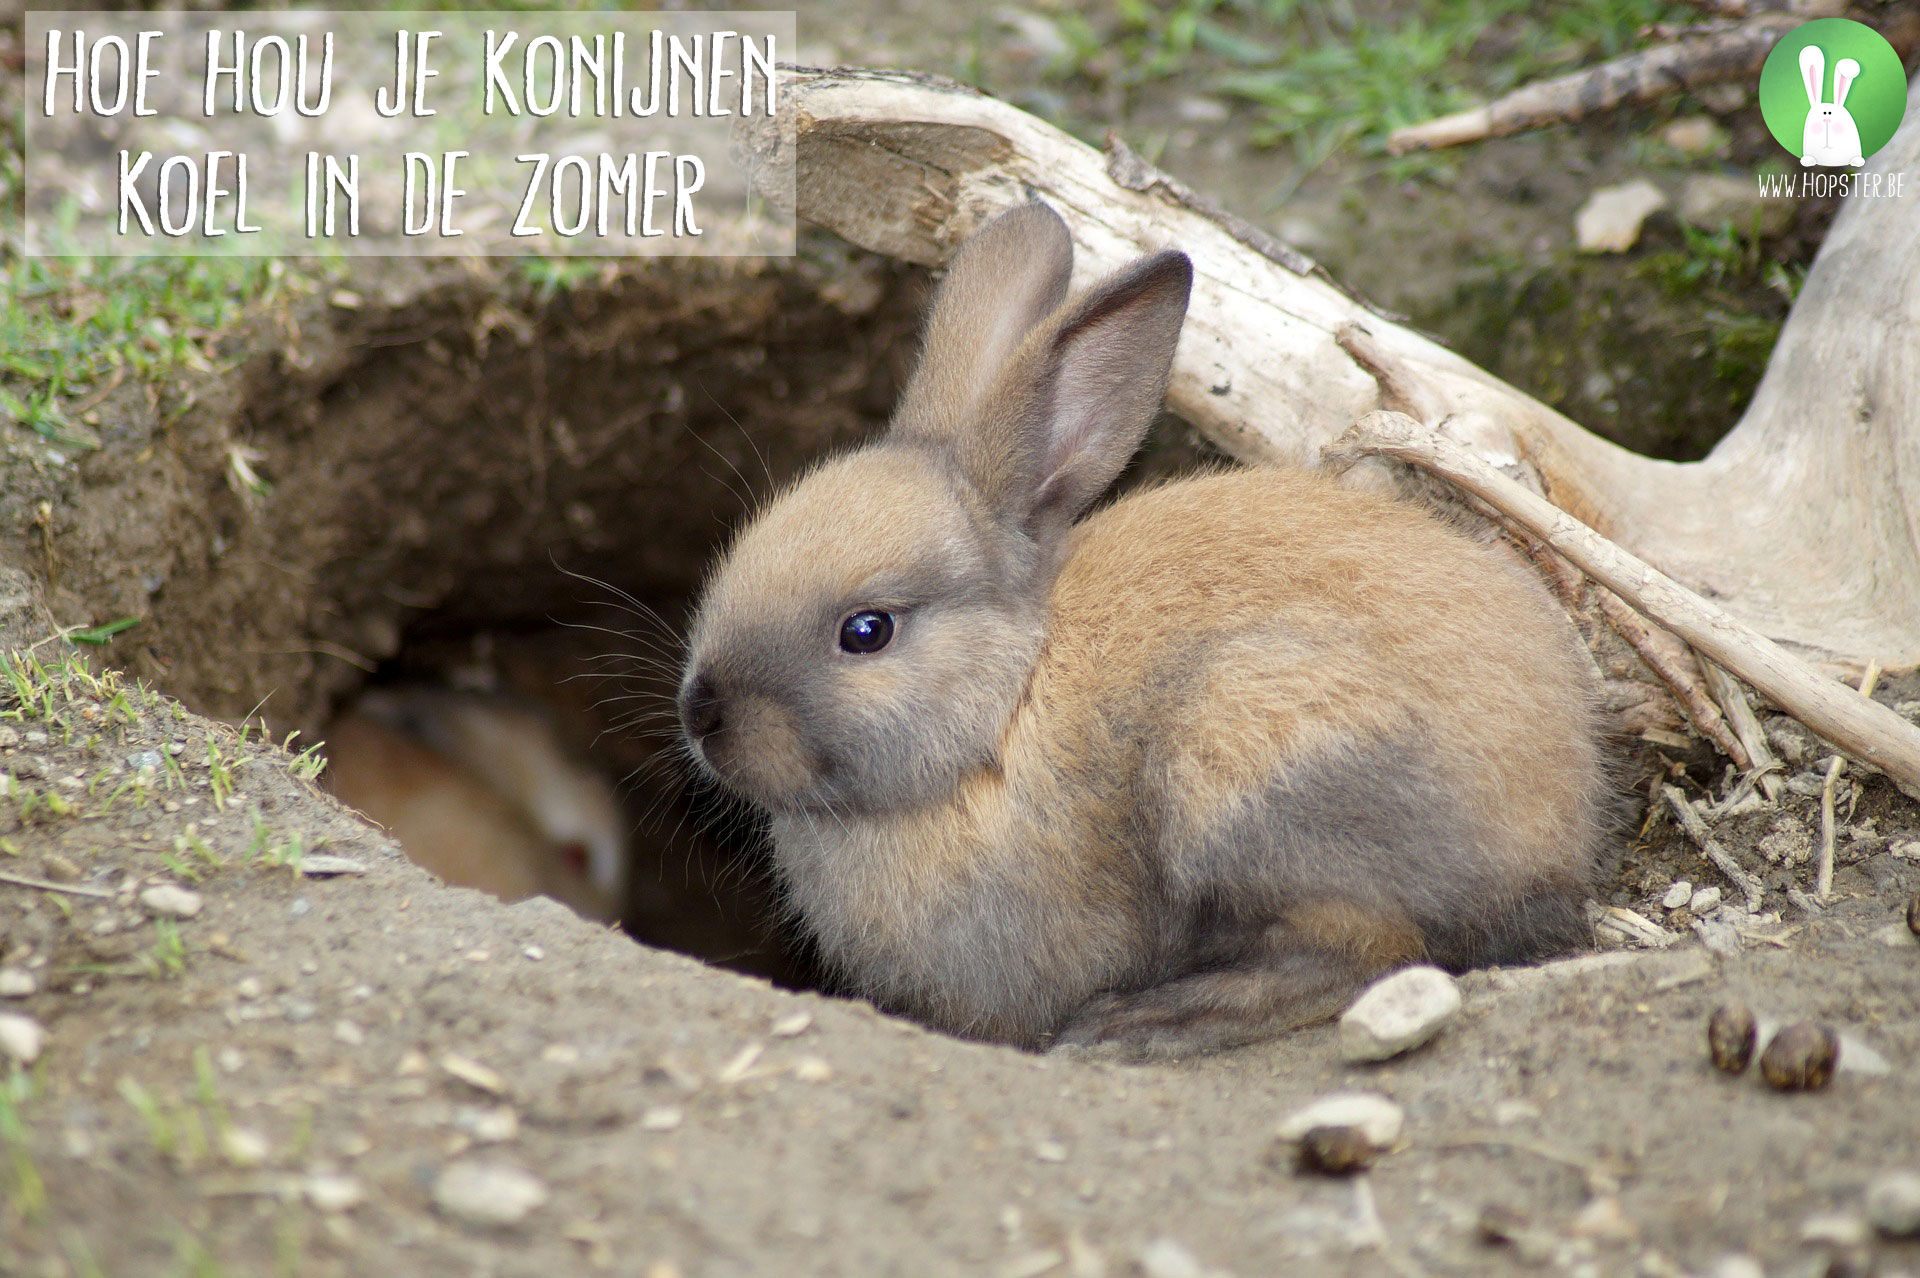 ga verder Koel wasserette Hoe hou je konijnen koel in de zomer | Konijnenadviesbureau Hopster